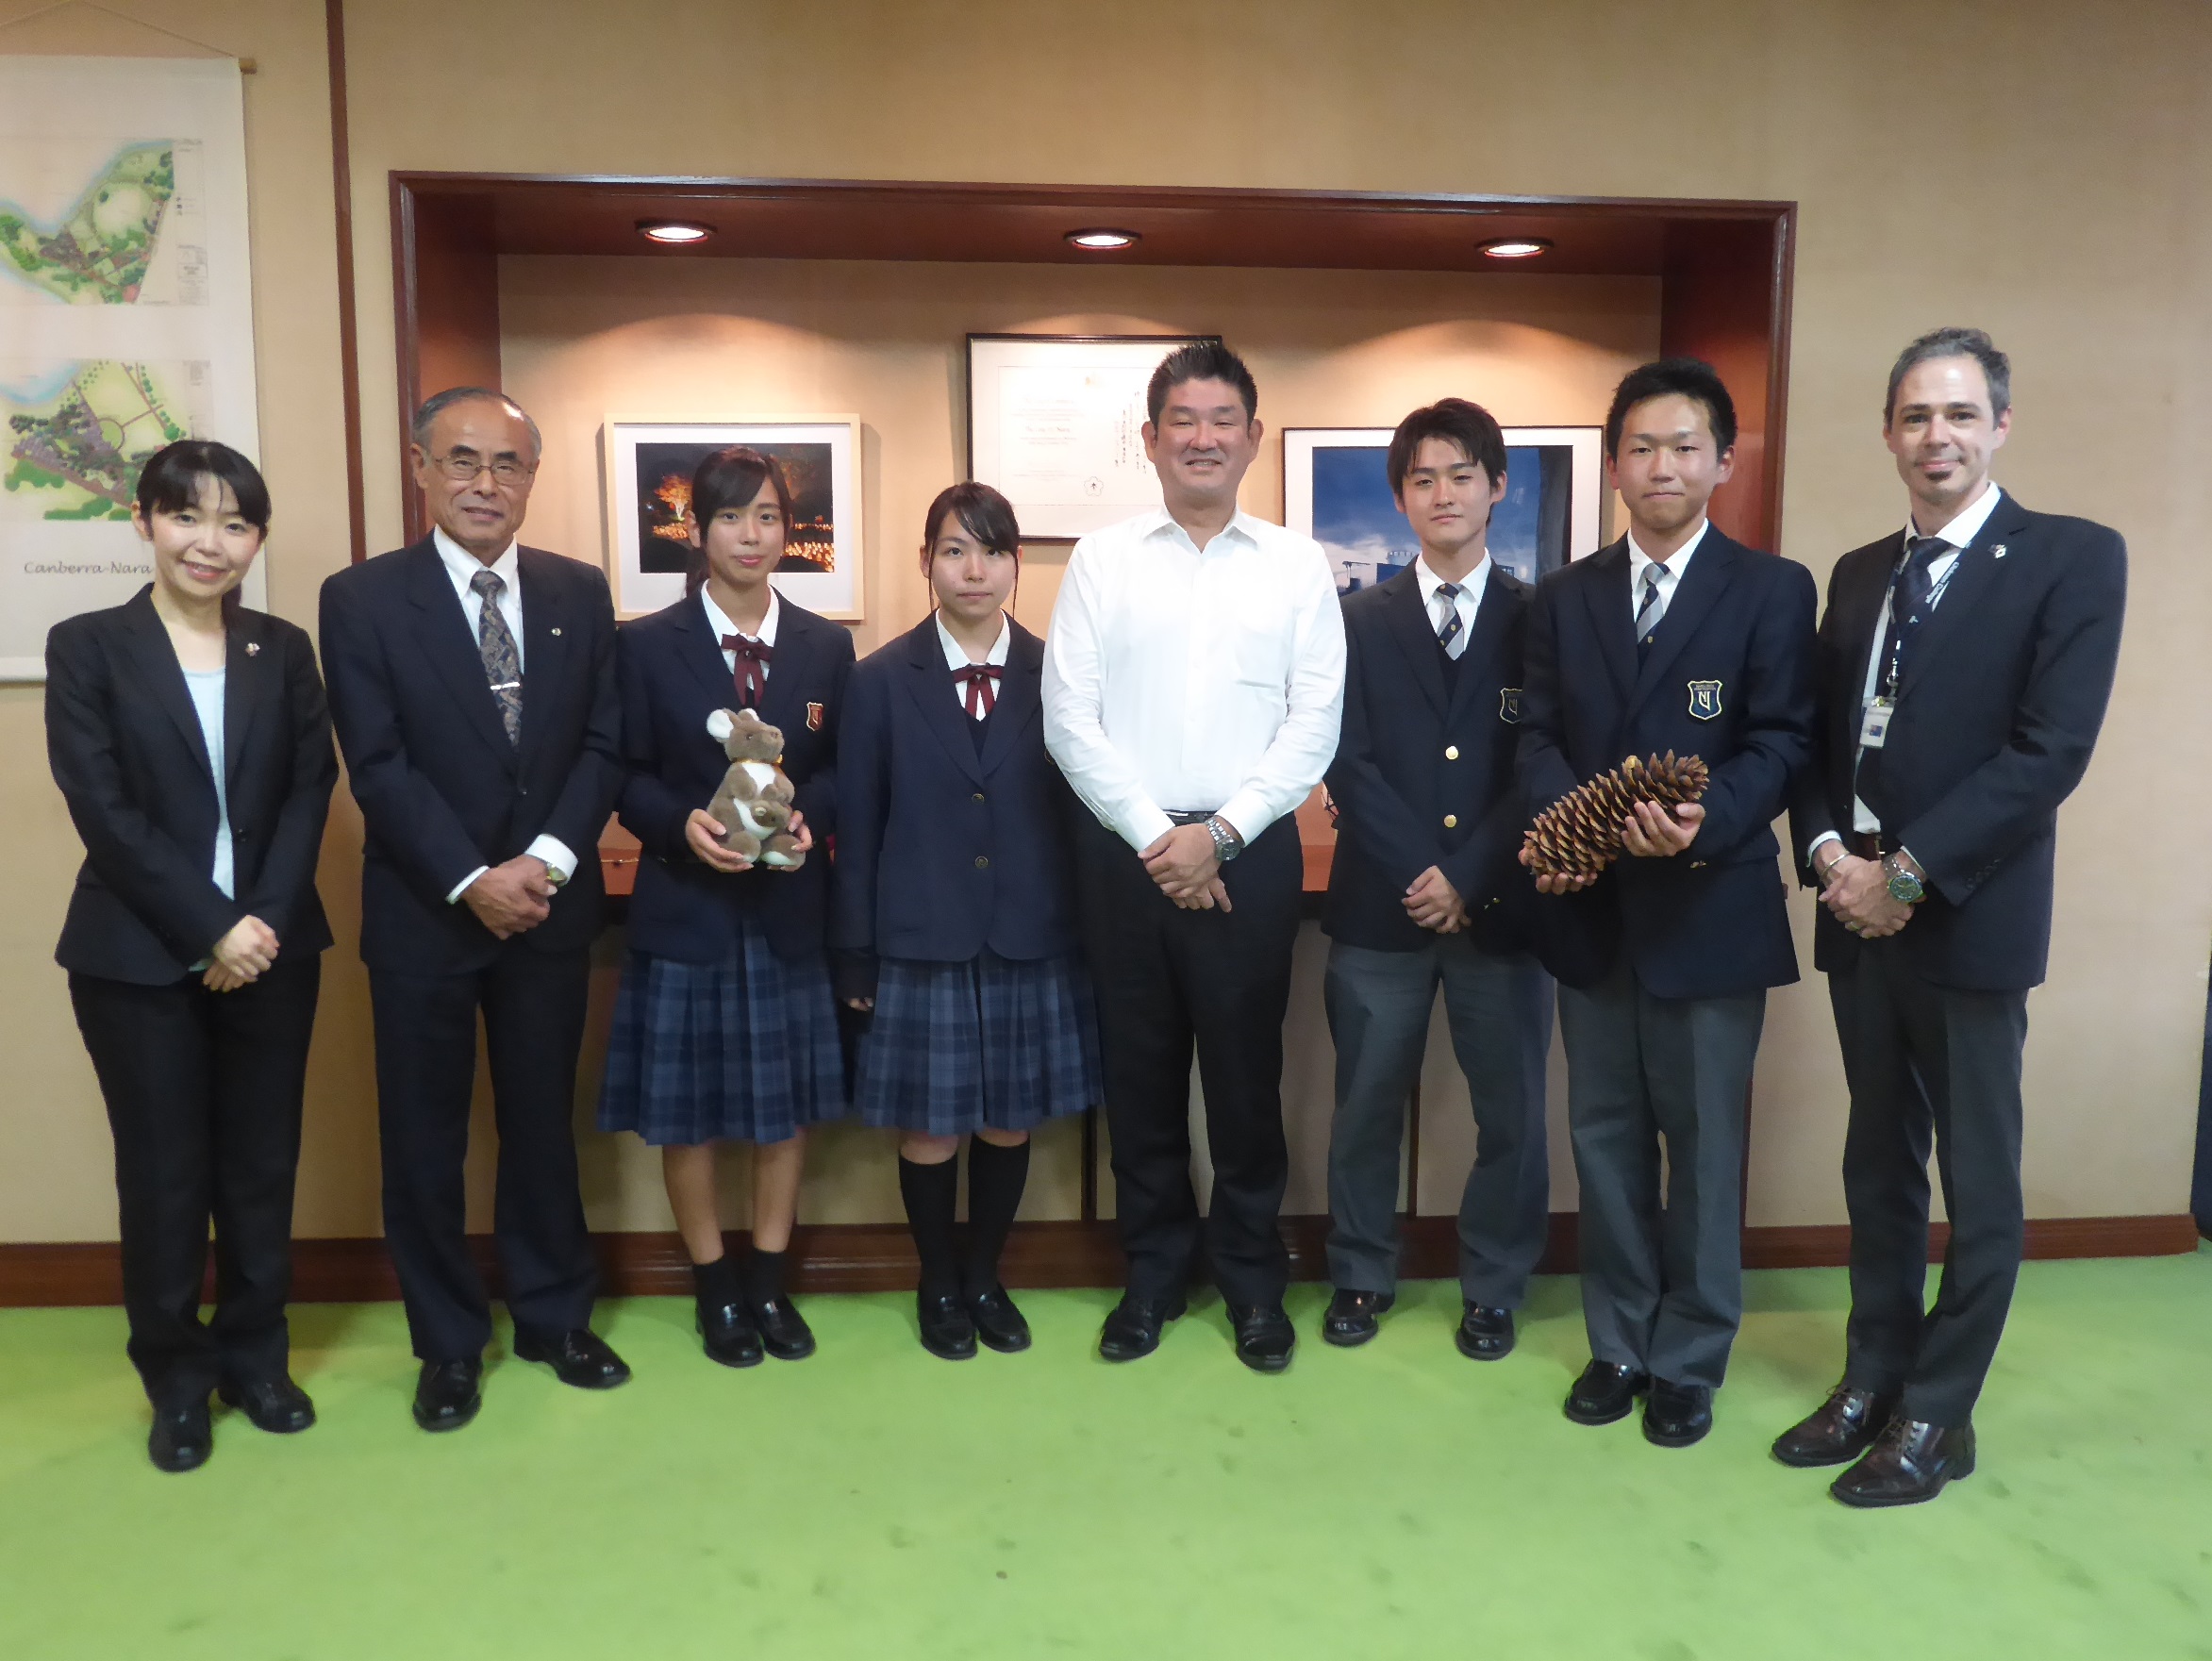 奈良大学附属高校生市長表敬訪問の画像